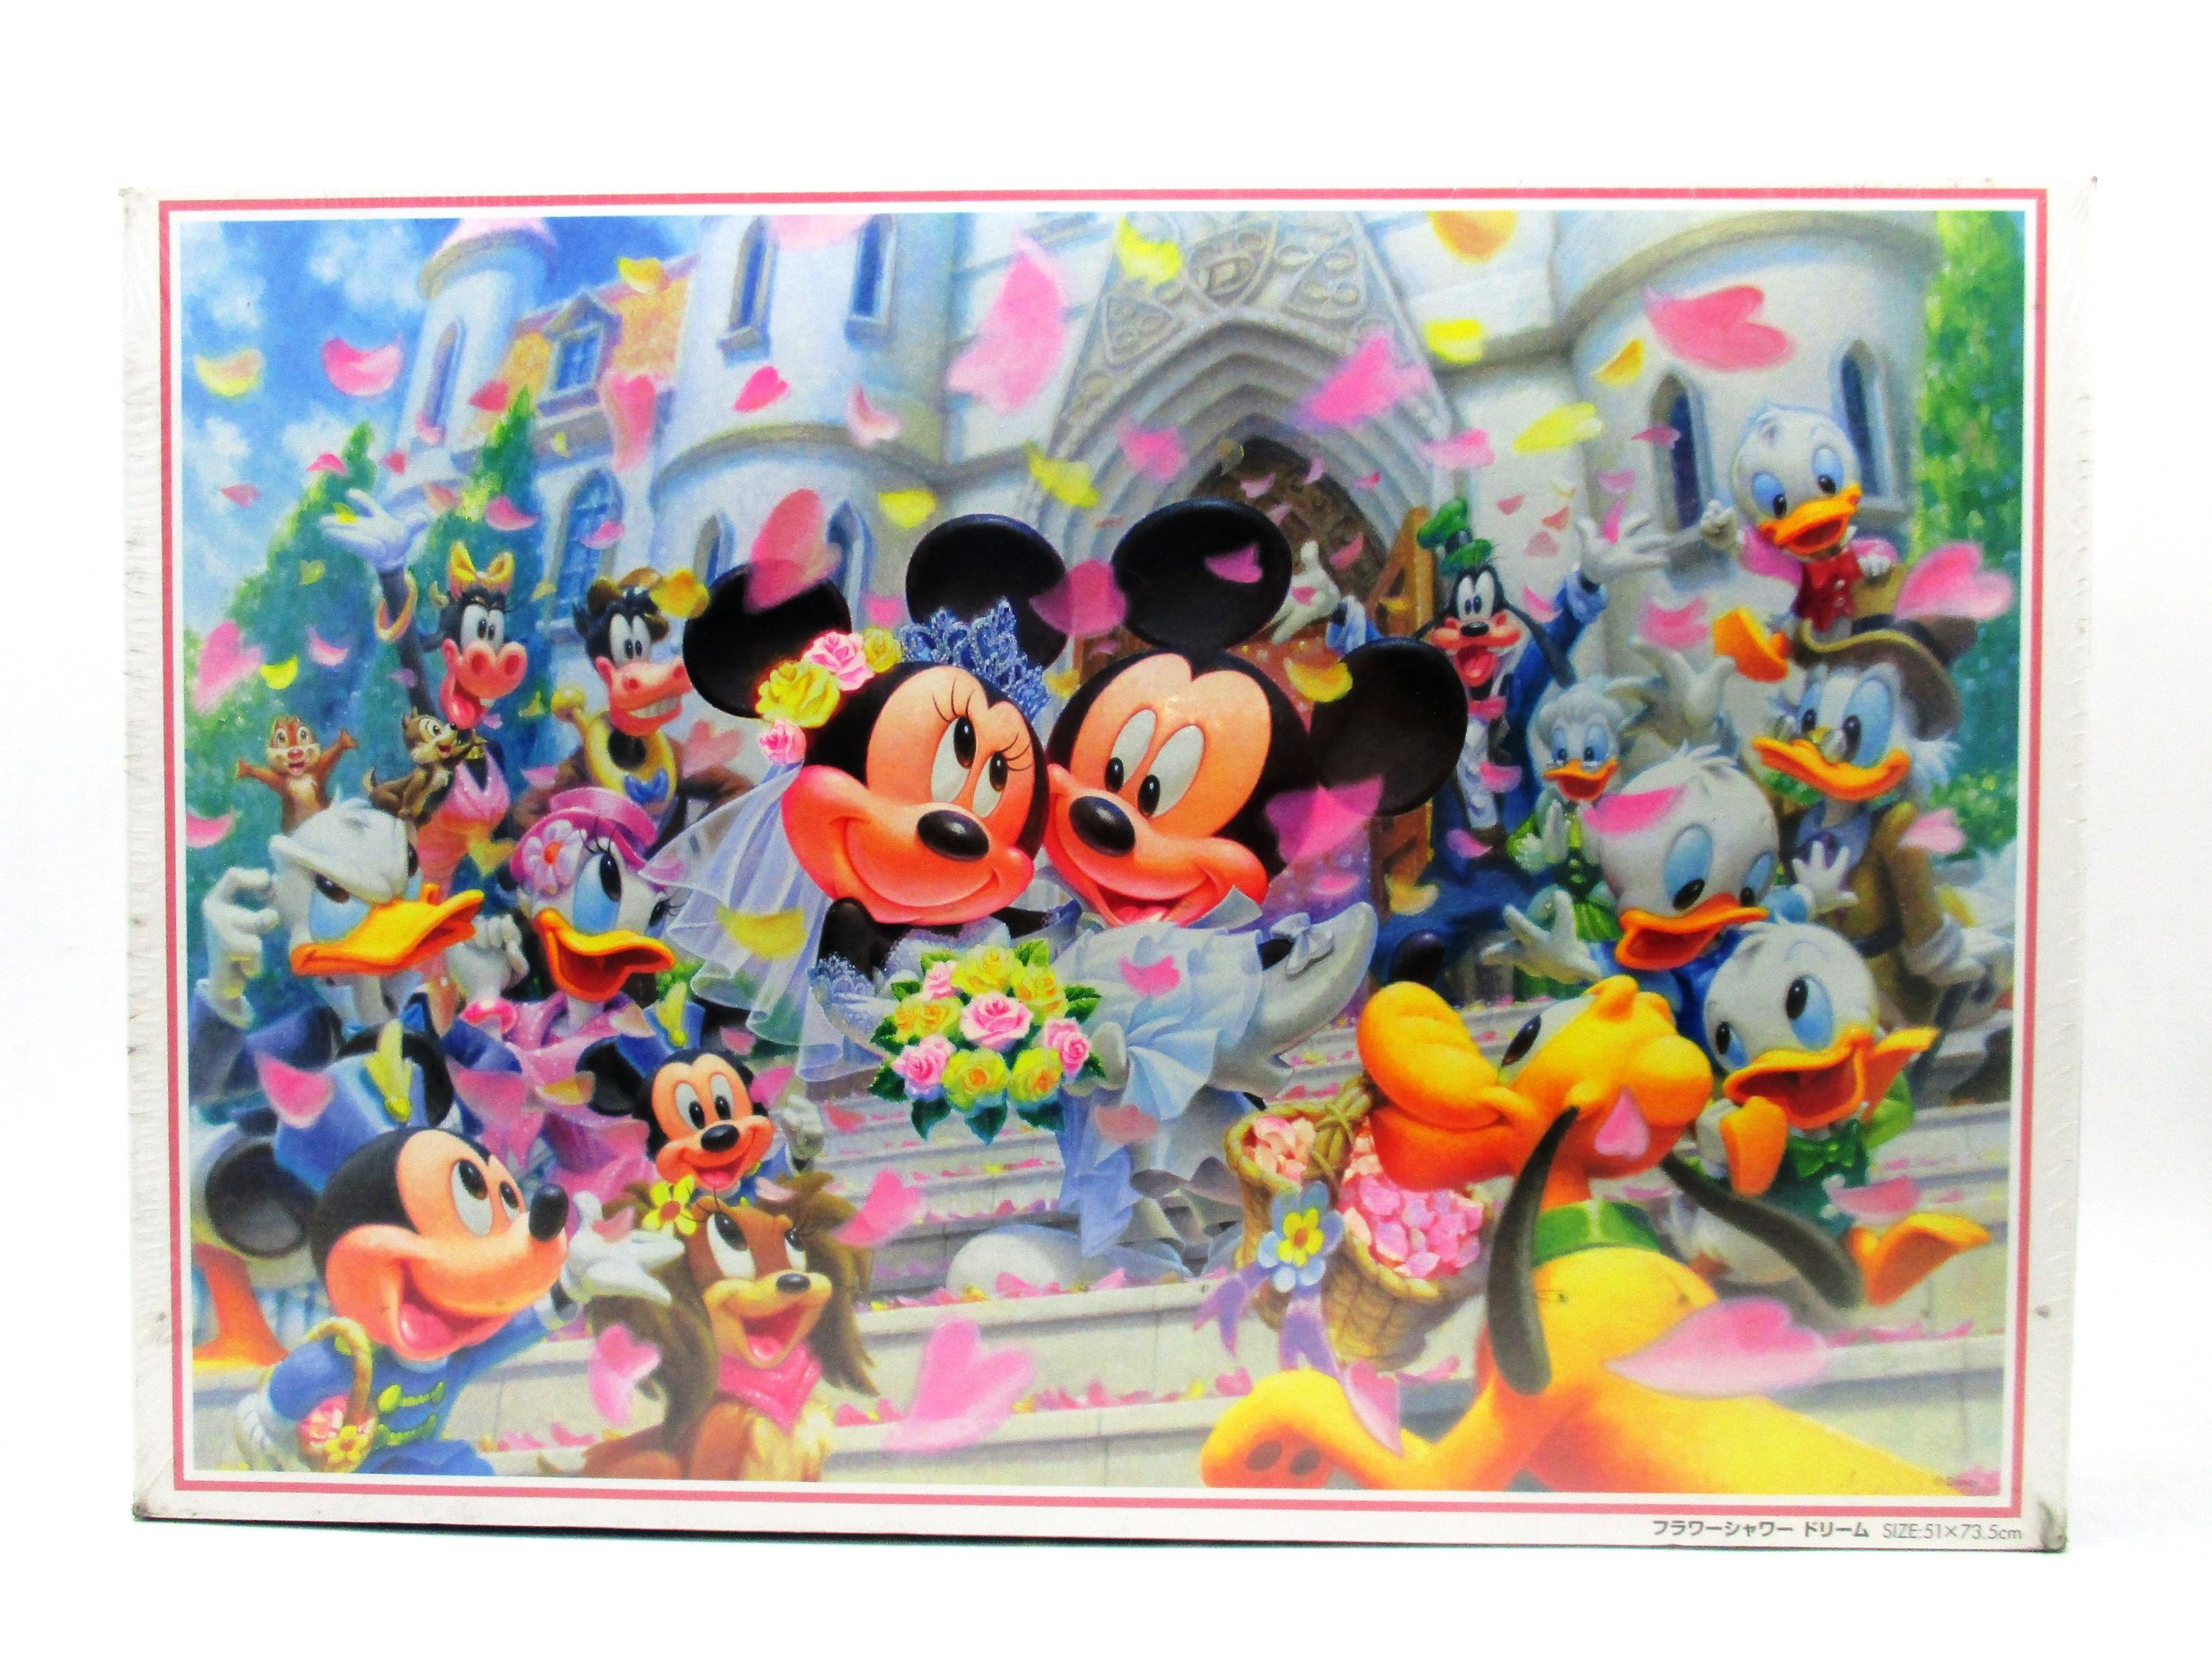 TENYO Puzzle Disney Toy Story 4 Amitié 60 Pièces Puzzle Enfant